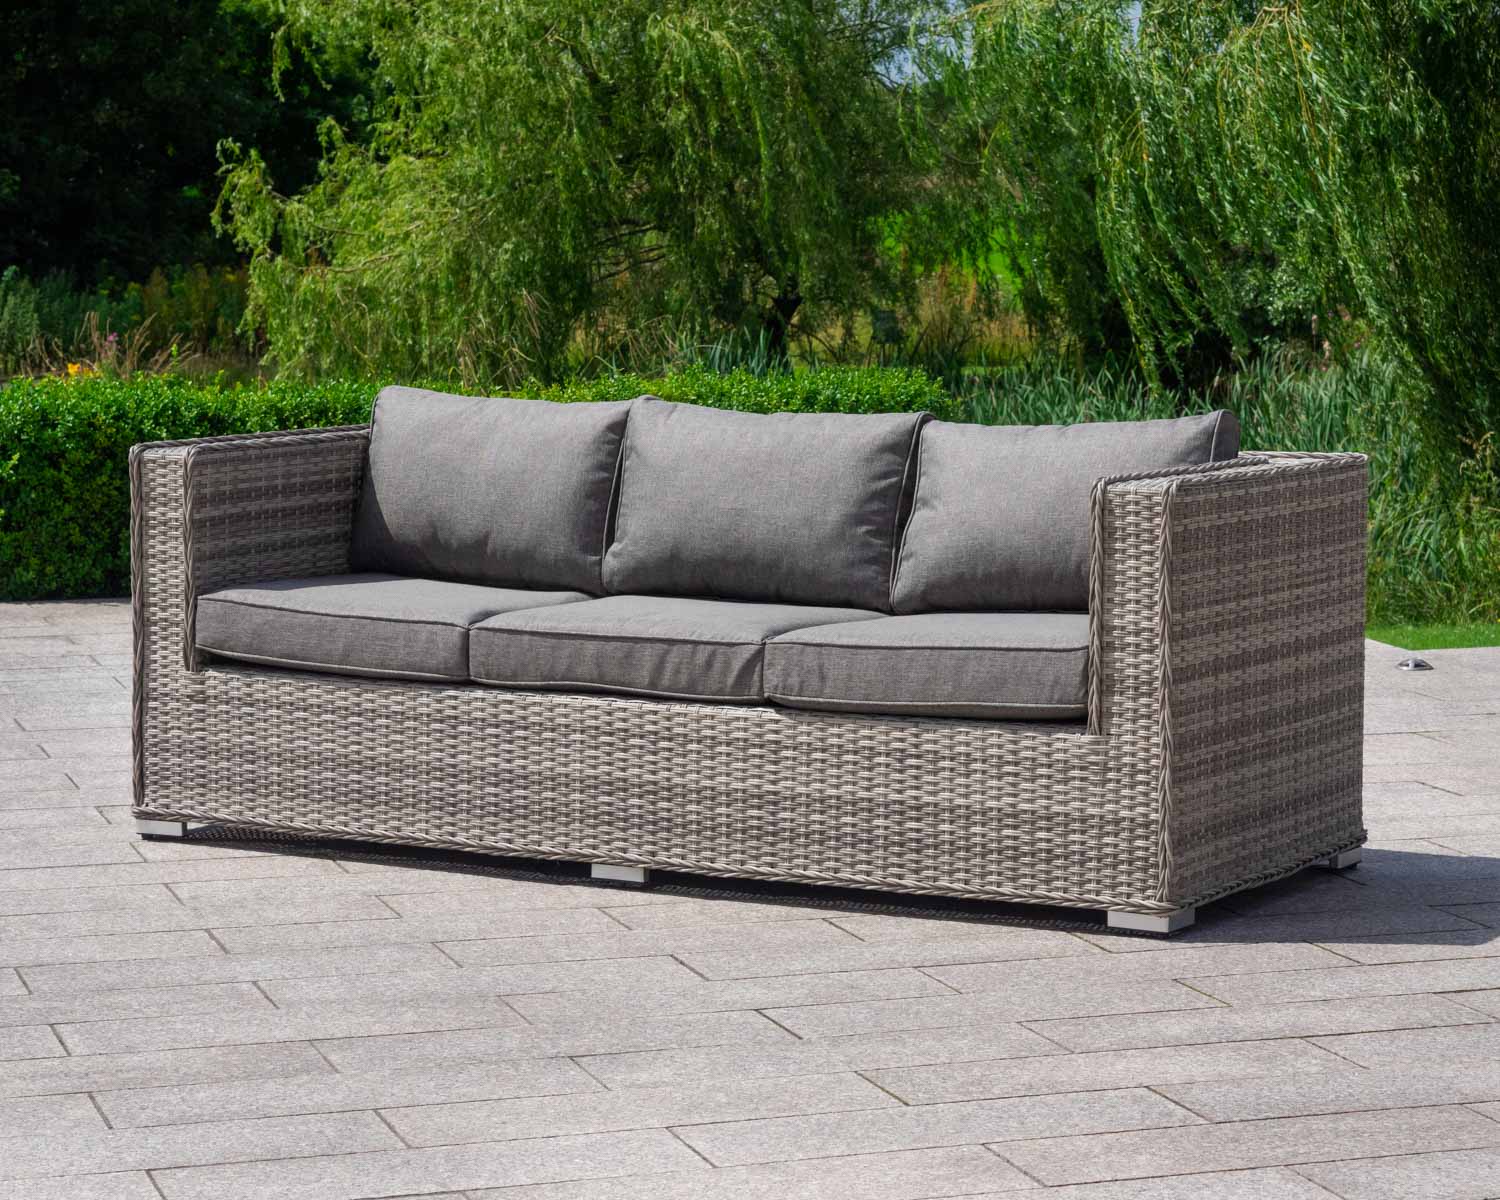 3 Seater Rattan Garden Sofa in Grey - Ascot - Rattan Garden Furniture